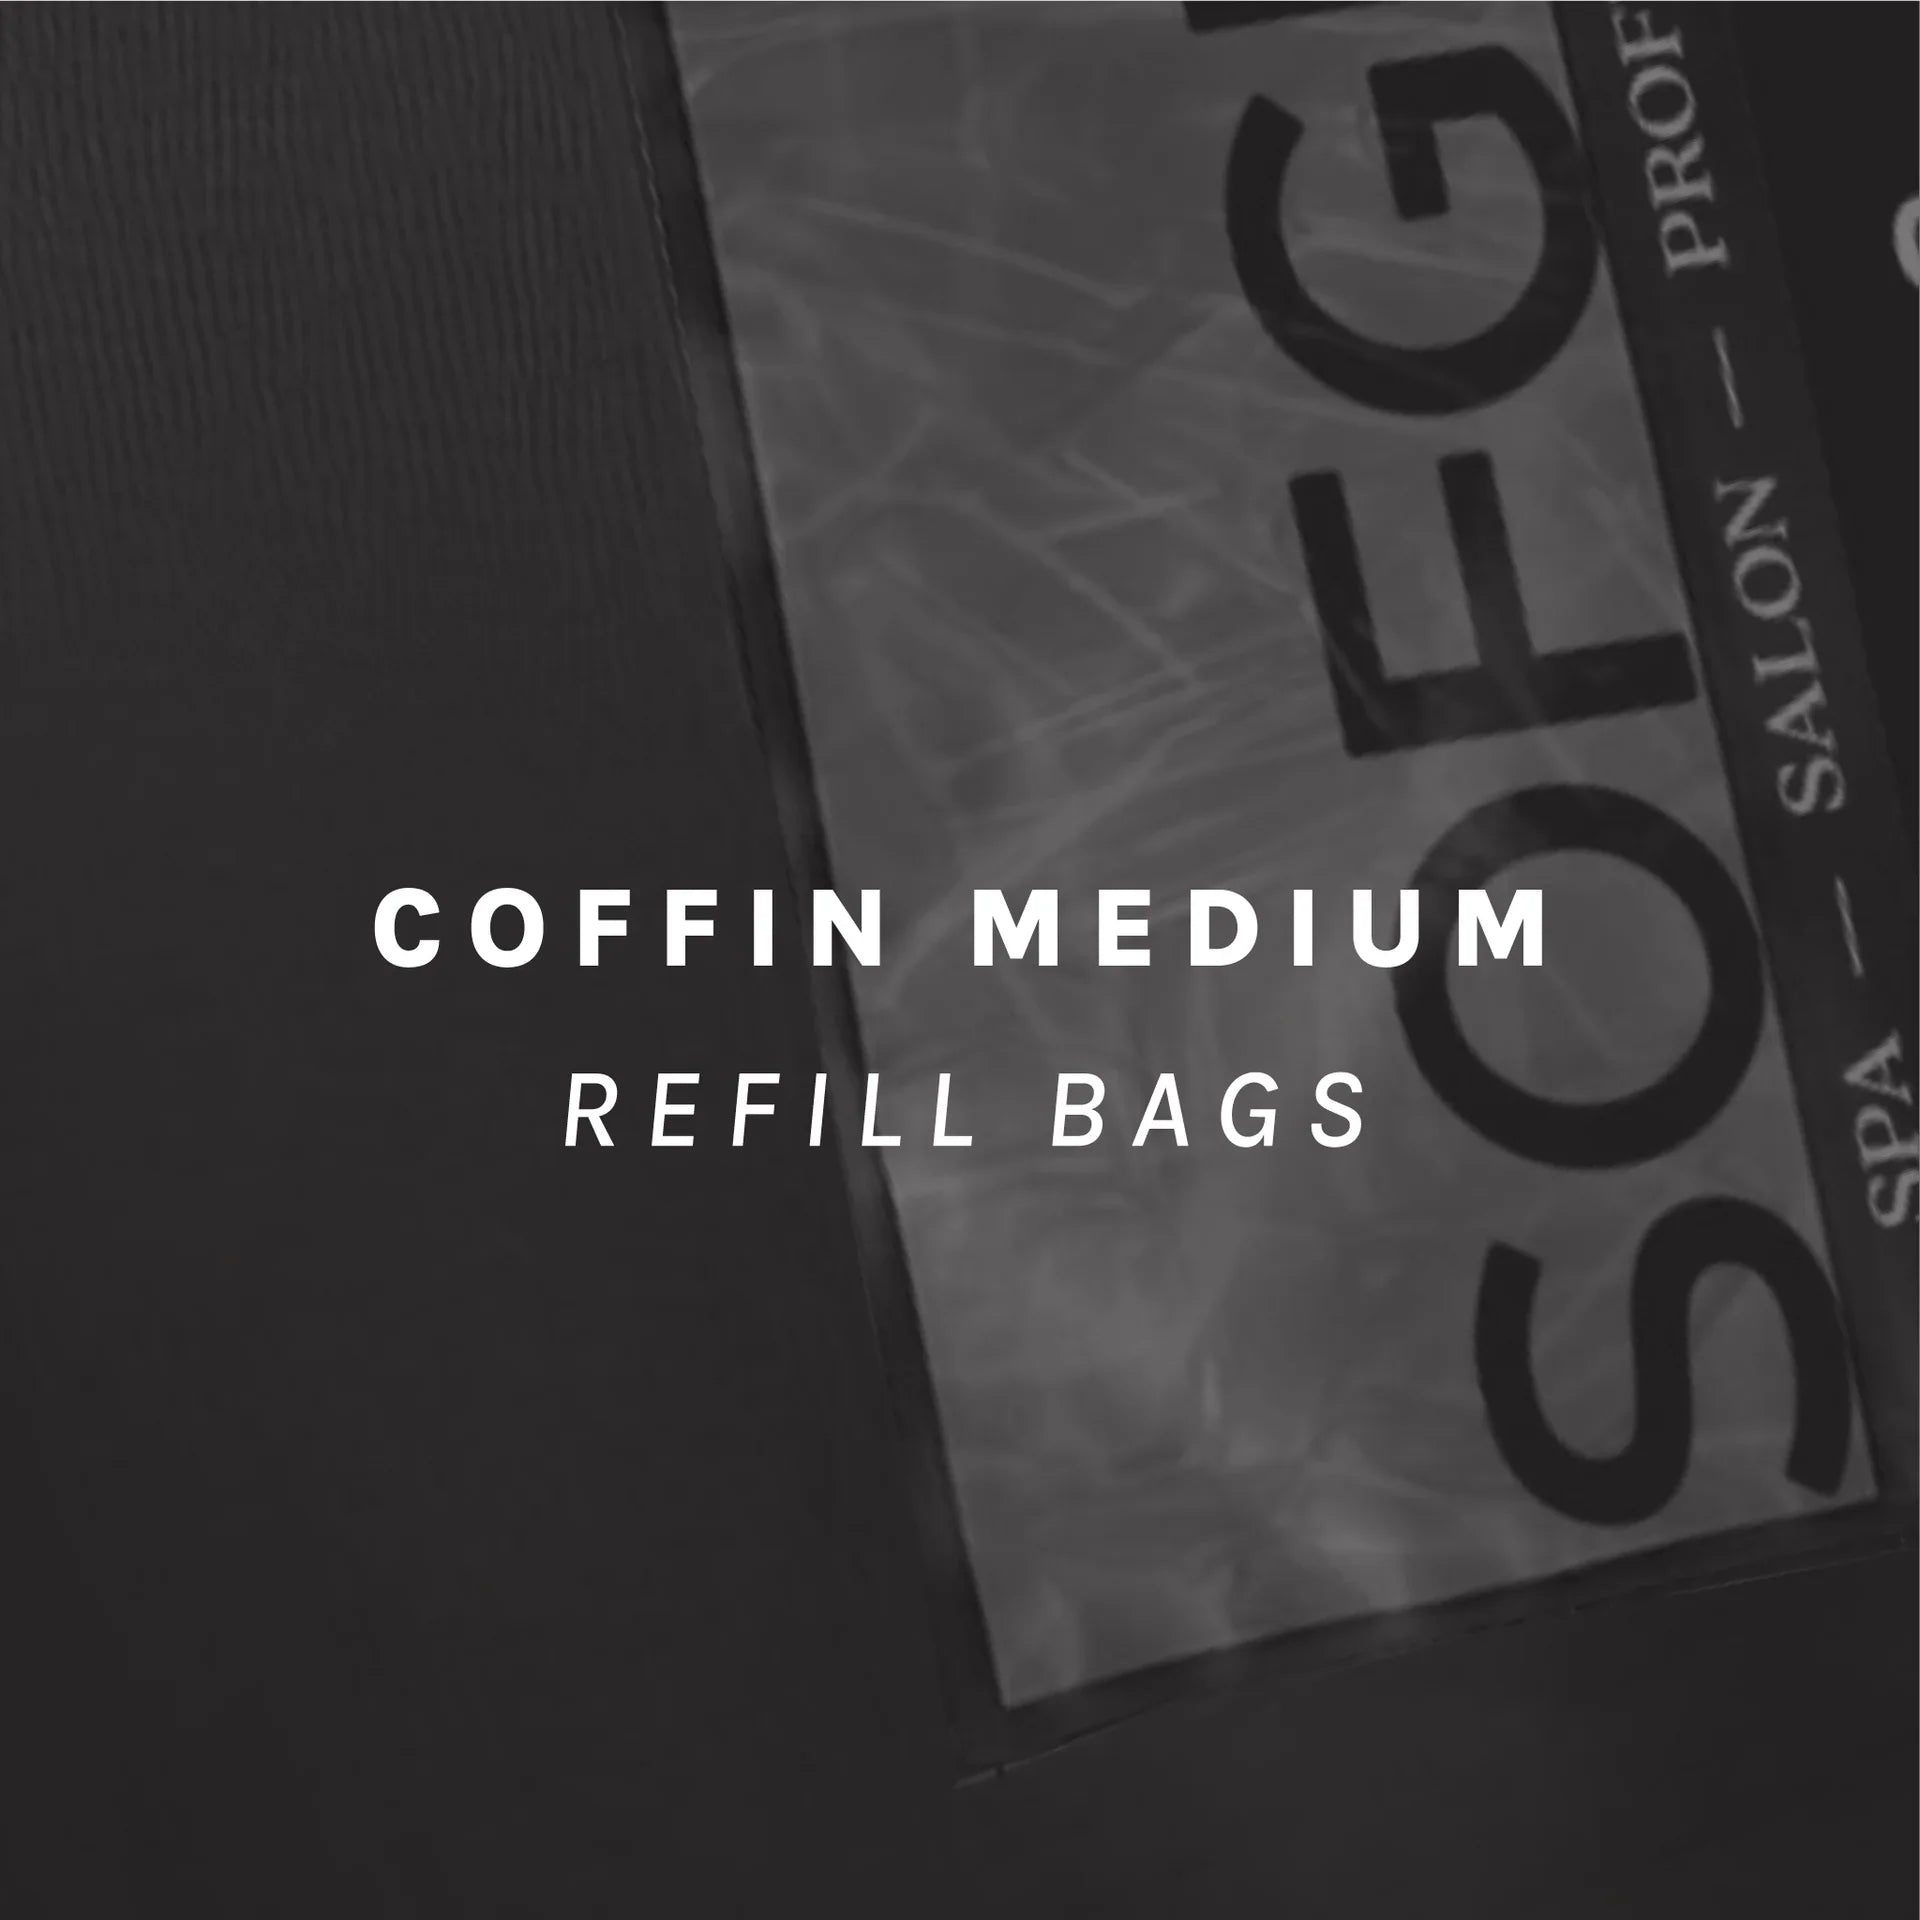 SOFtips™ Standard Coffin Medium [Refill Bag] [50pcs]